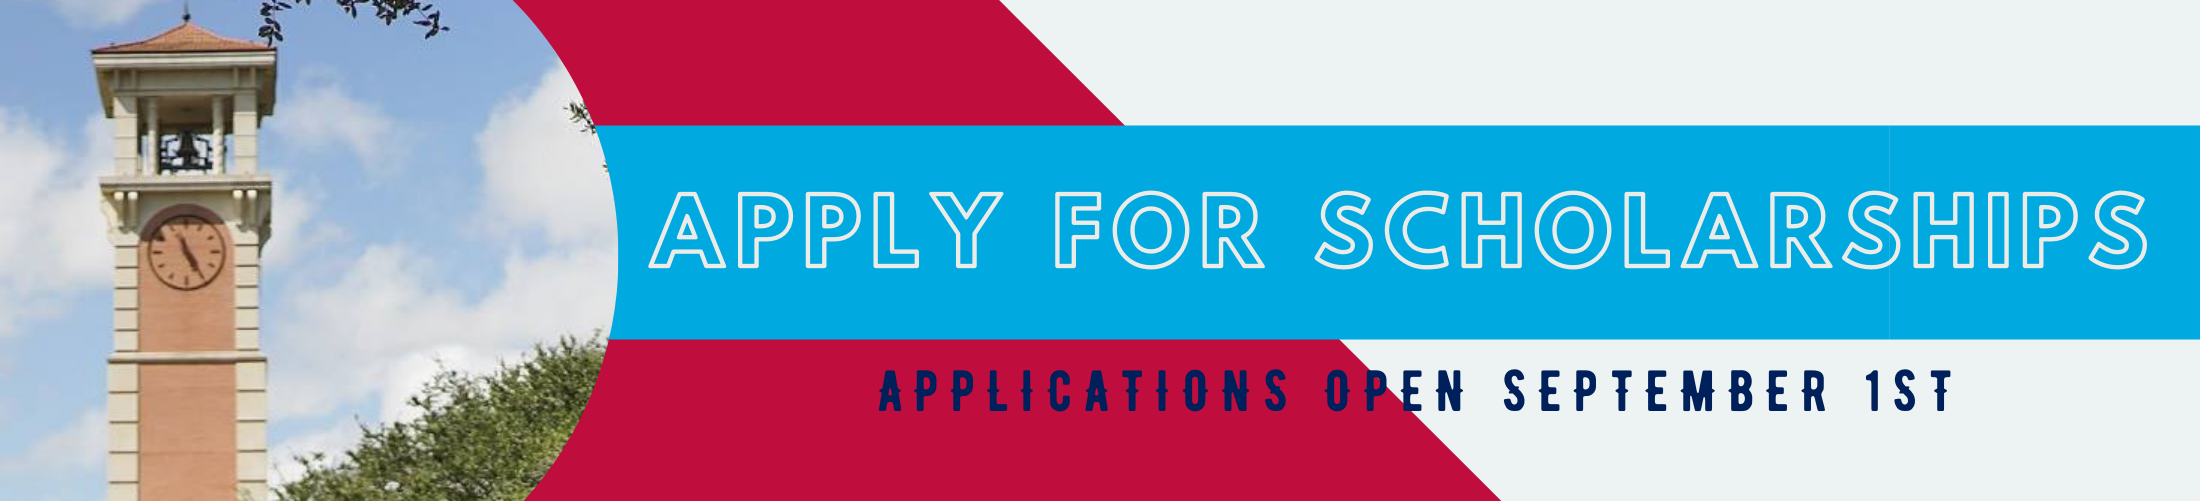 Apply for Scholarships. Applications open September 1.